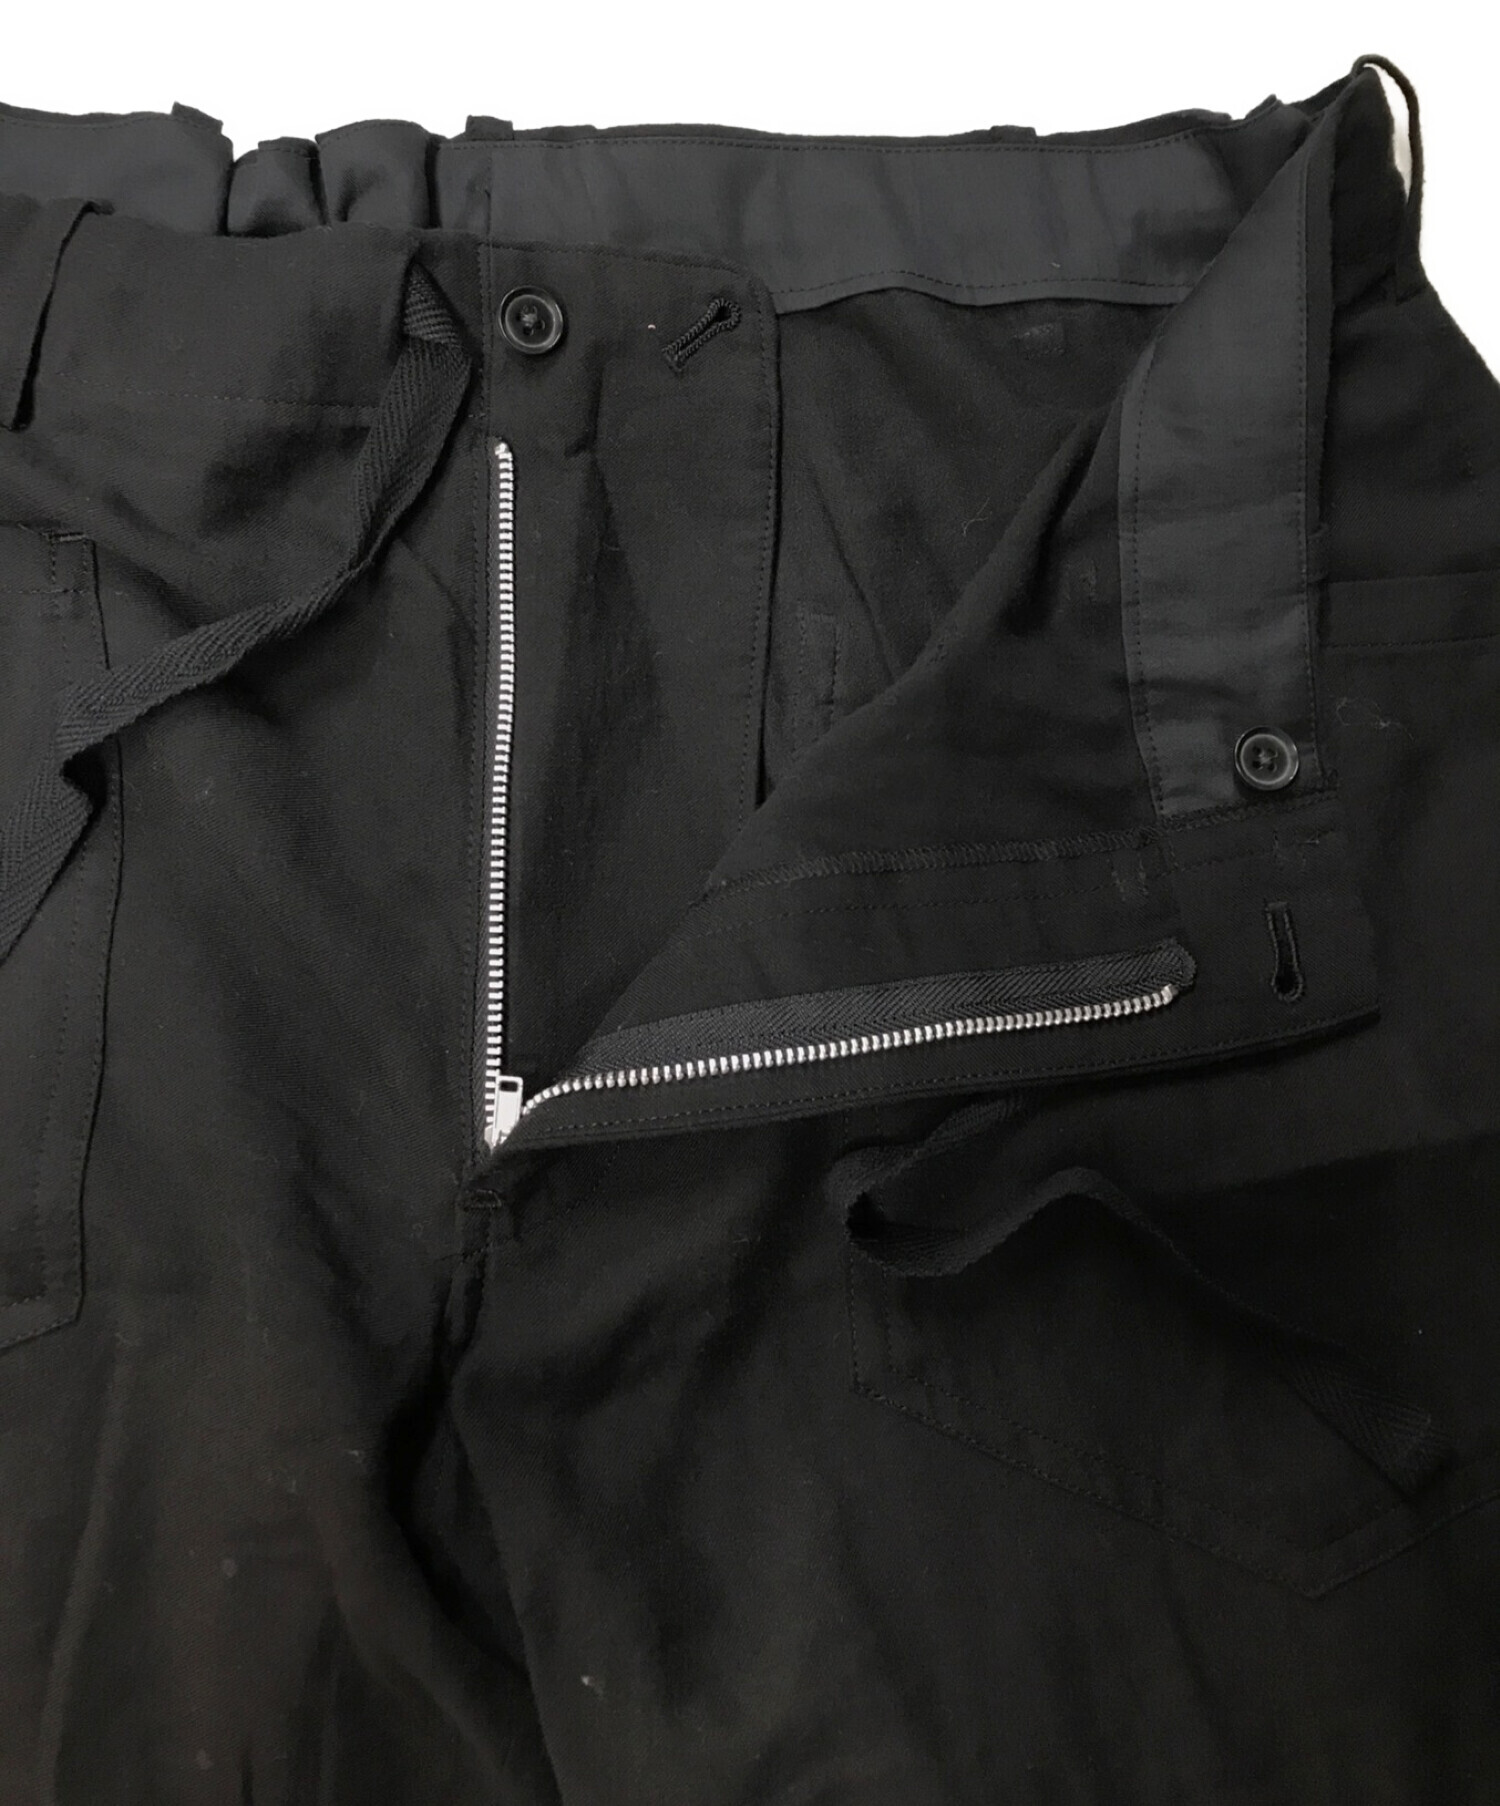 Yohji Yamamoto pour homme (ヨウジヤマモトプールオム) フロントポケットパンツ ブラック サイズ:3